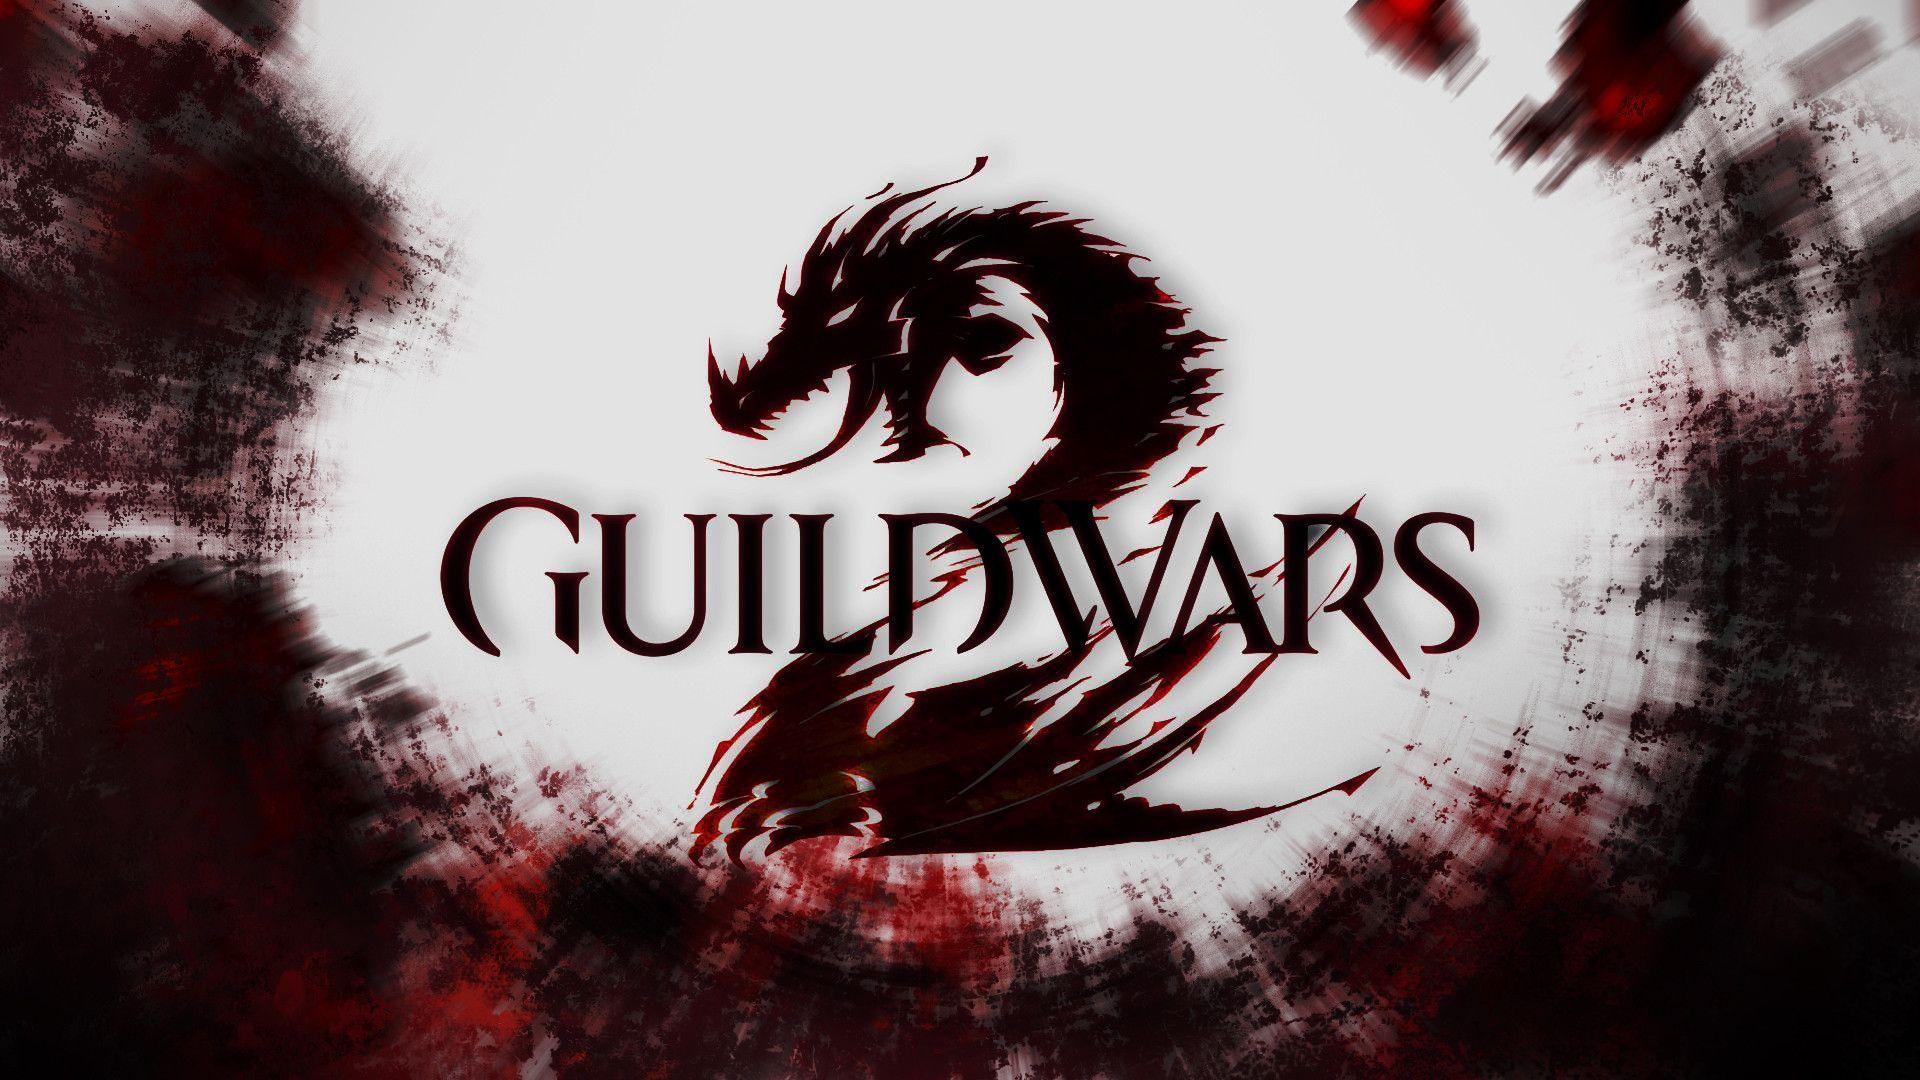 Guild Wars In HD Wallpaper 1920x1080. Hot HD Wallpaper